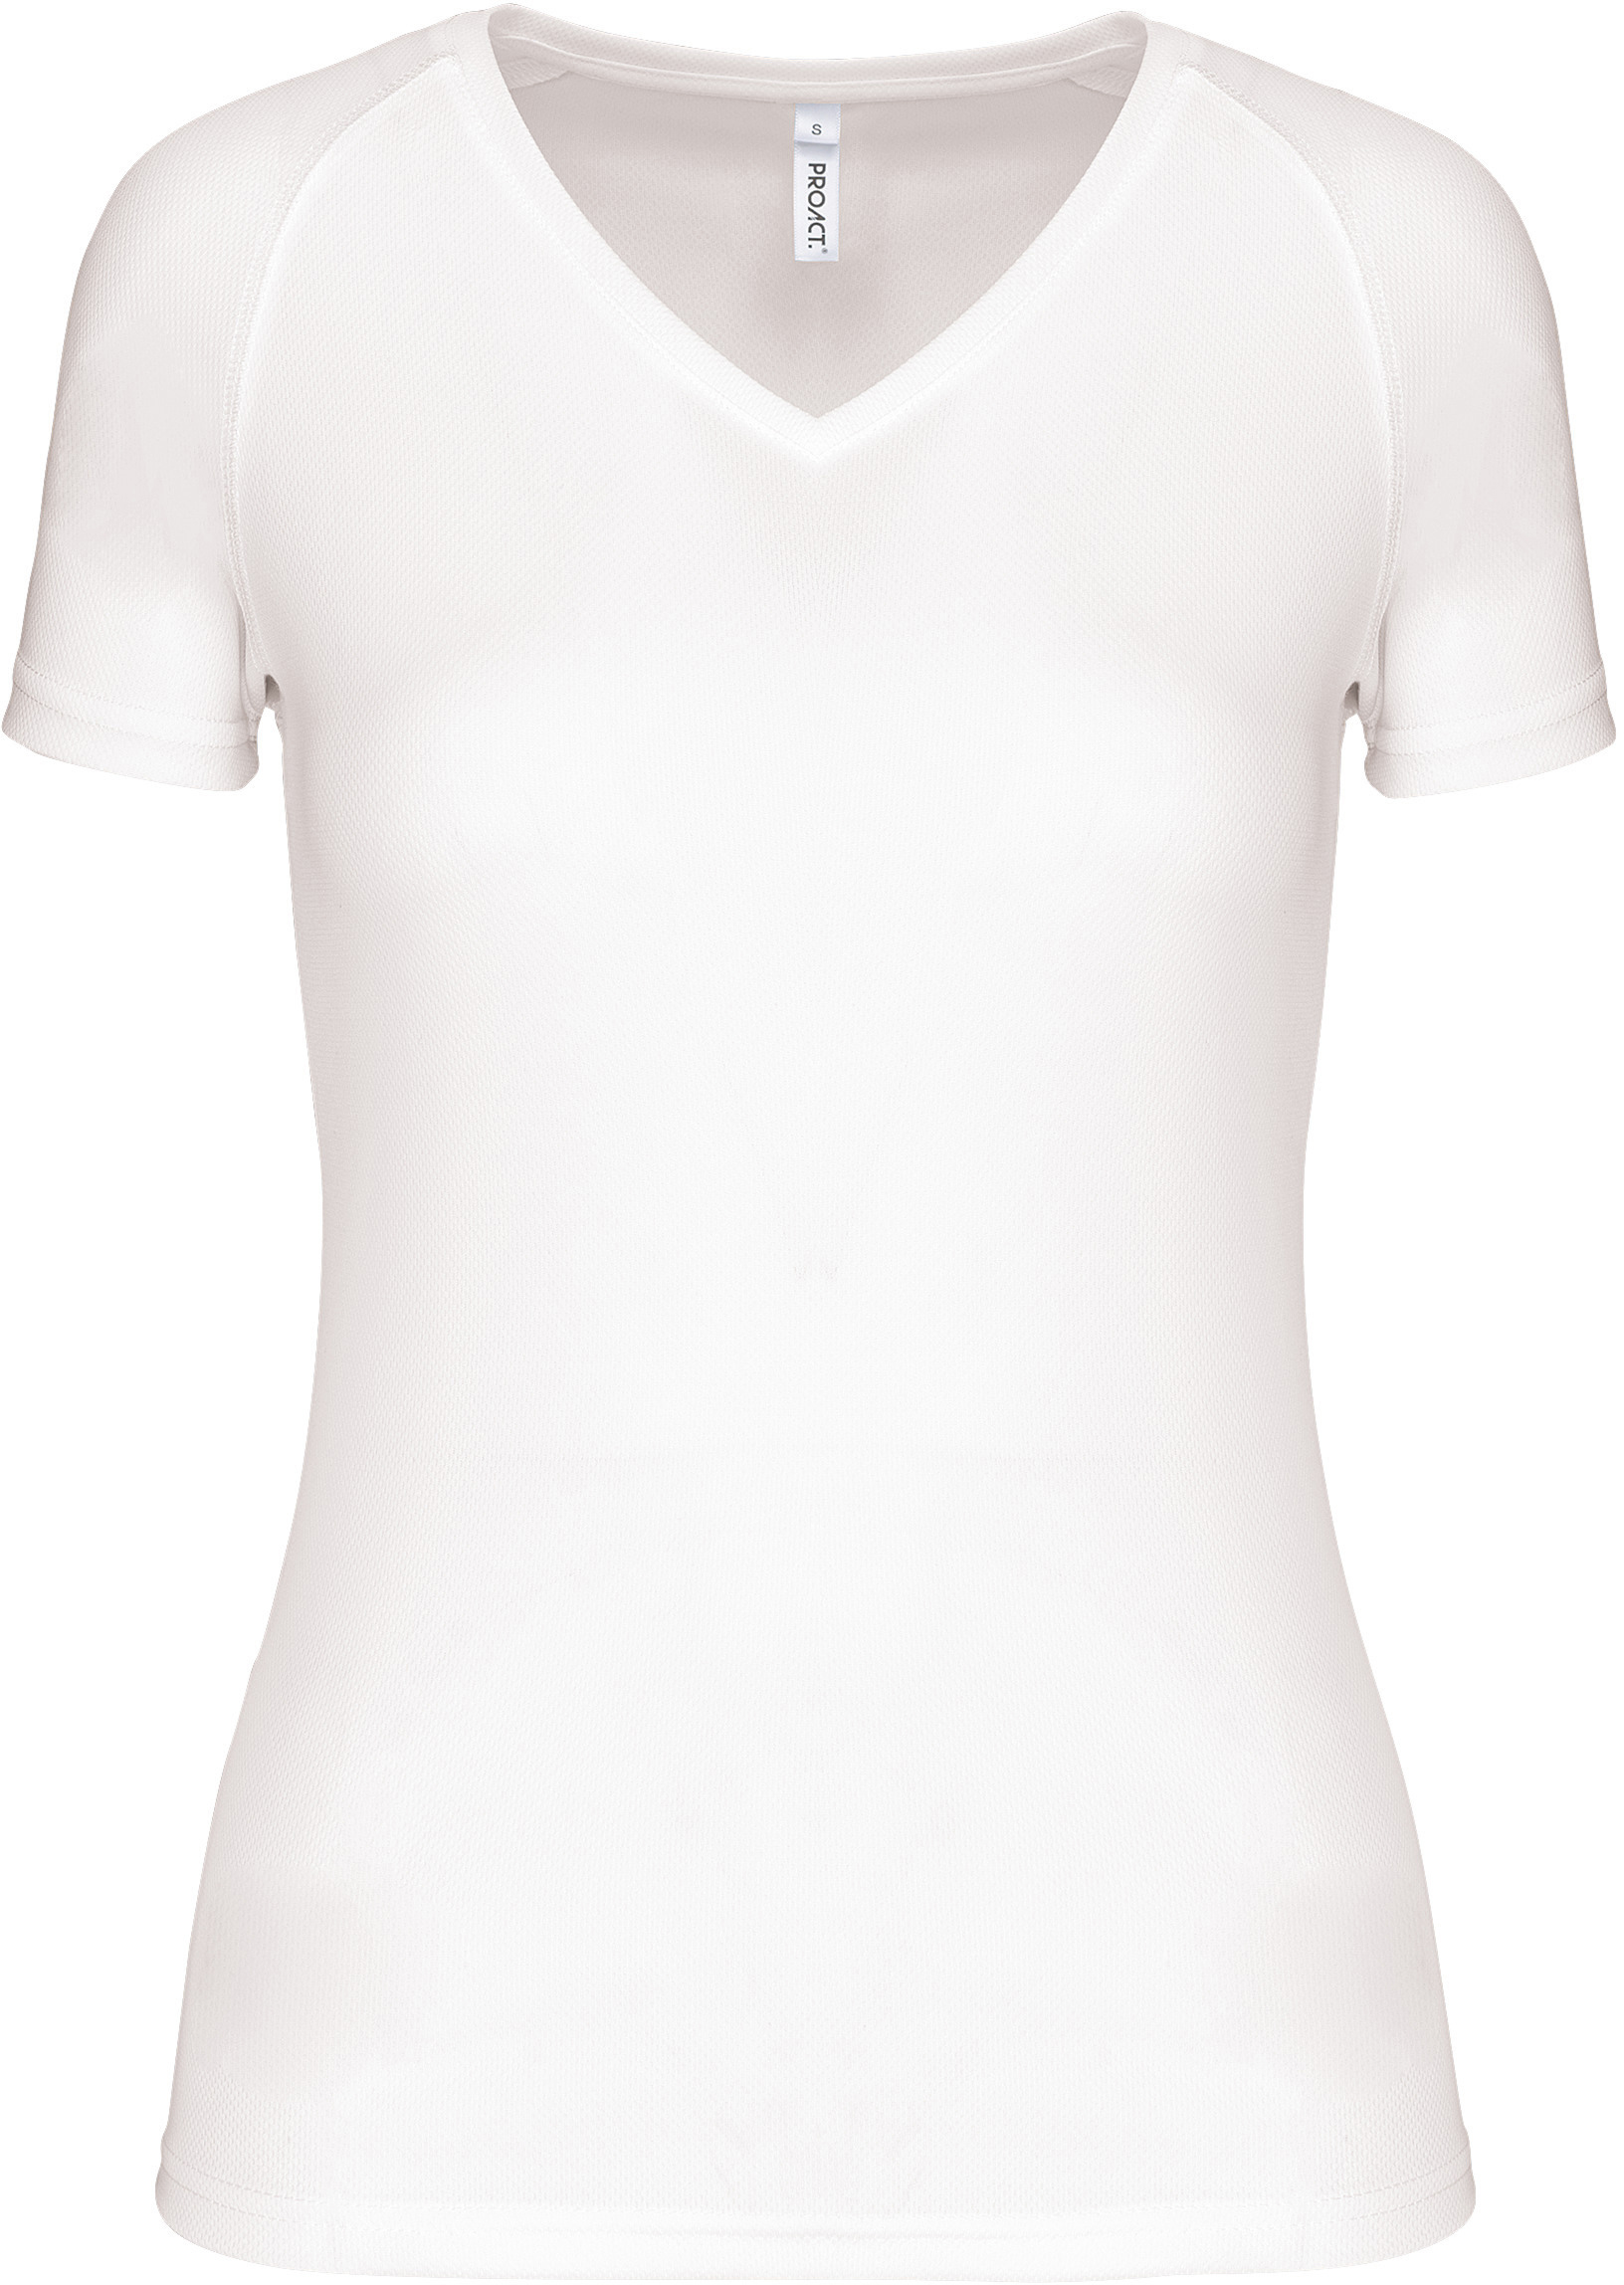 Dámské sportovní tričko s výstřihem do V PA477 Barva: bílá, Velikost: S